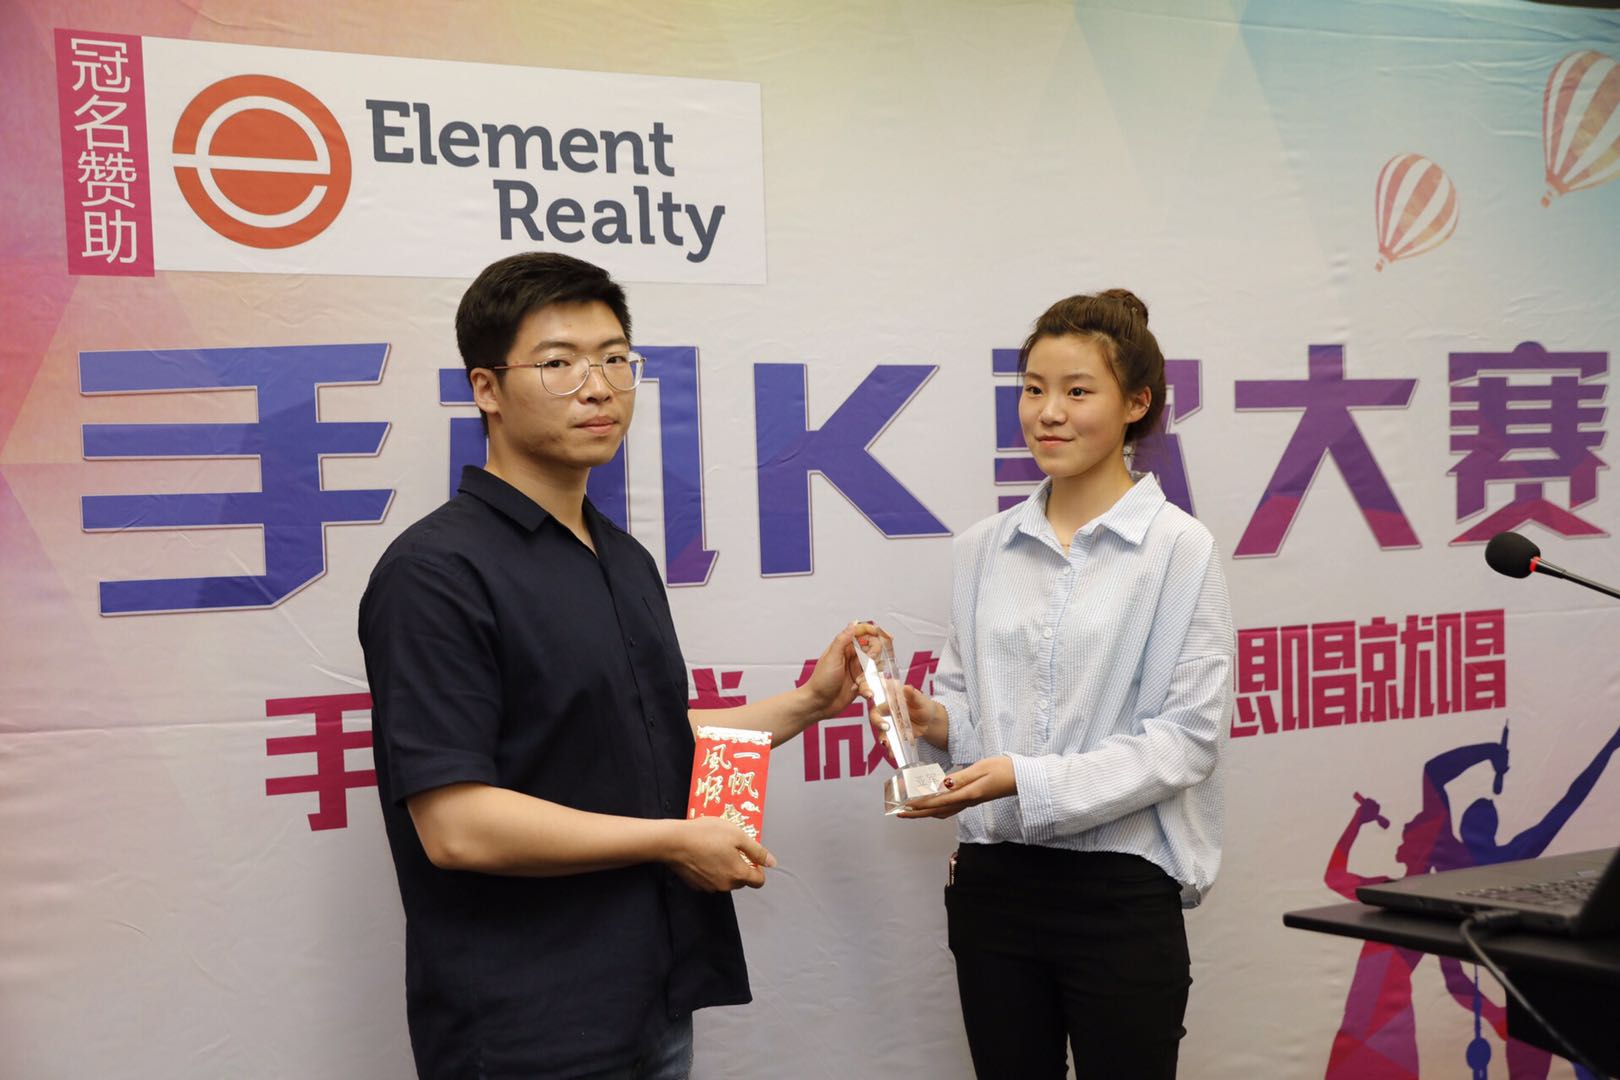 新闻图9 Element Realty手机K歌大赛启动，全民K歌唱响朋友圈